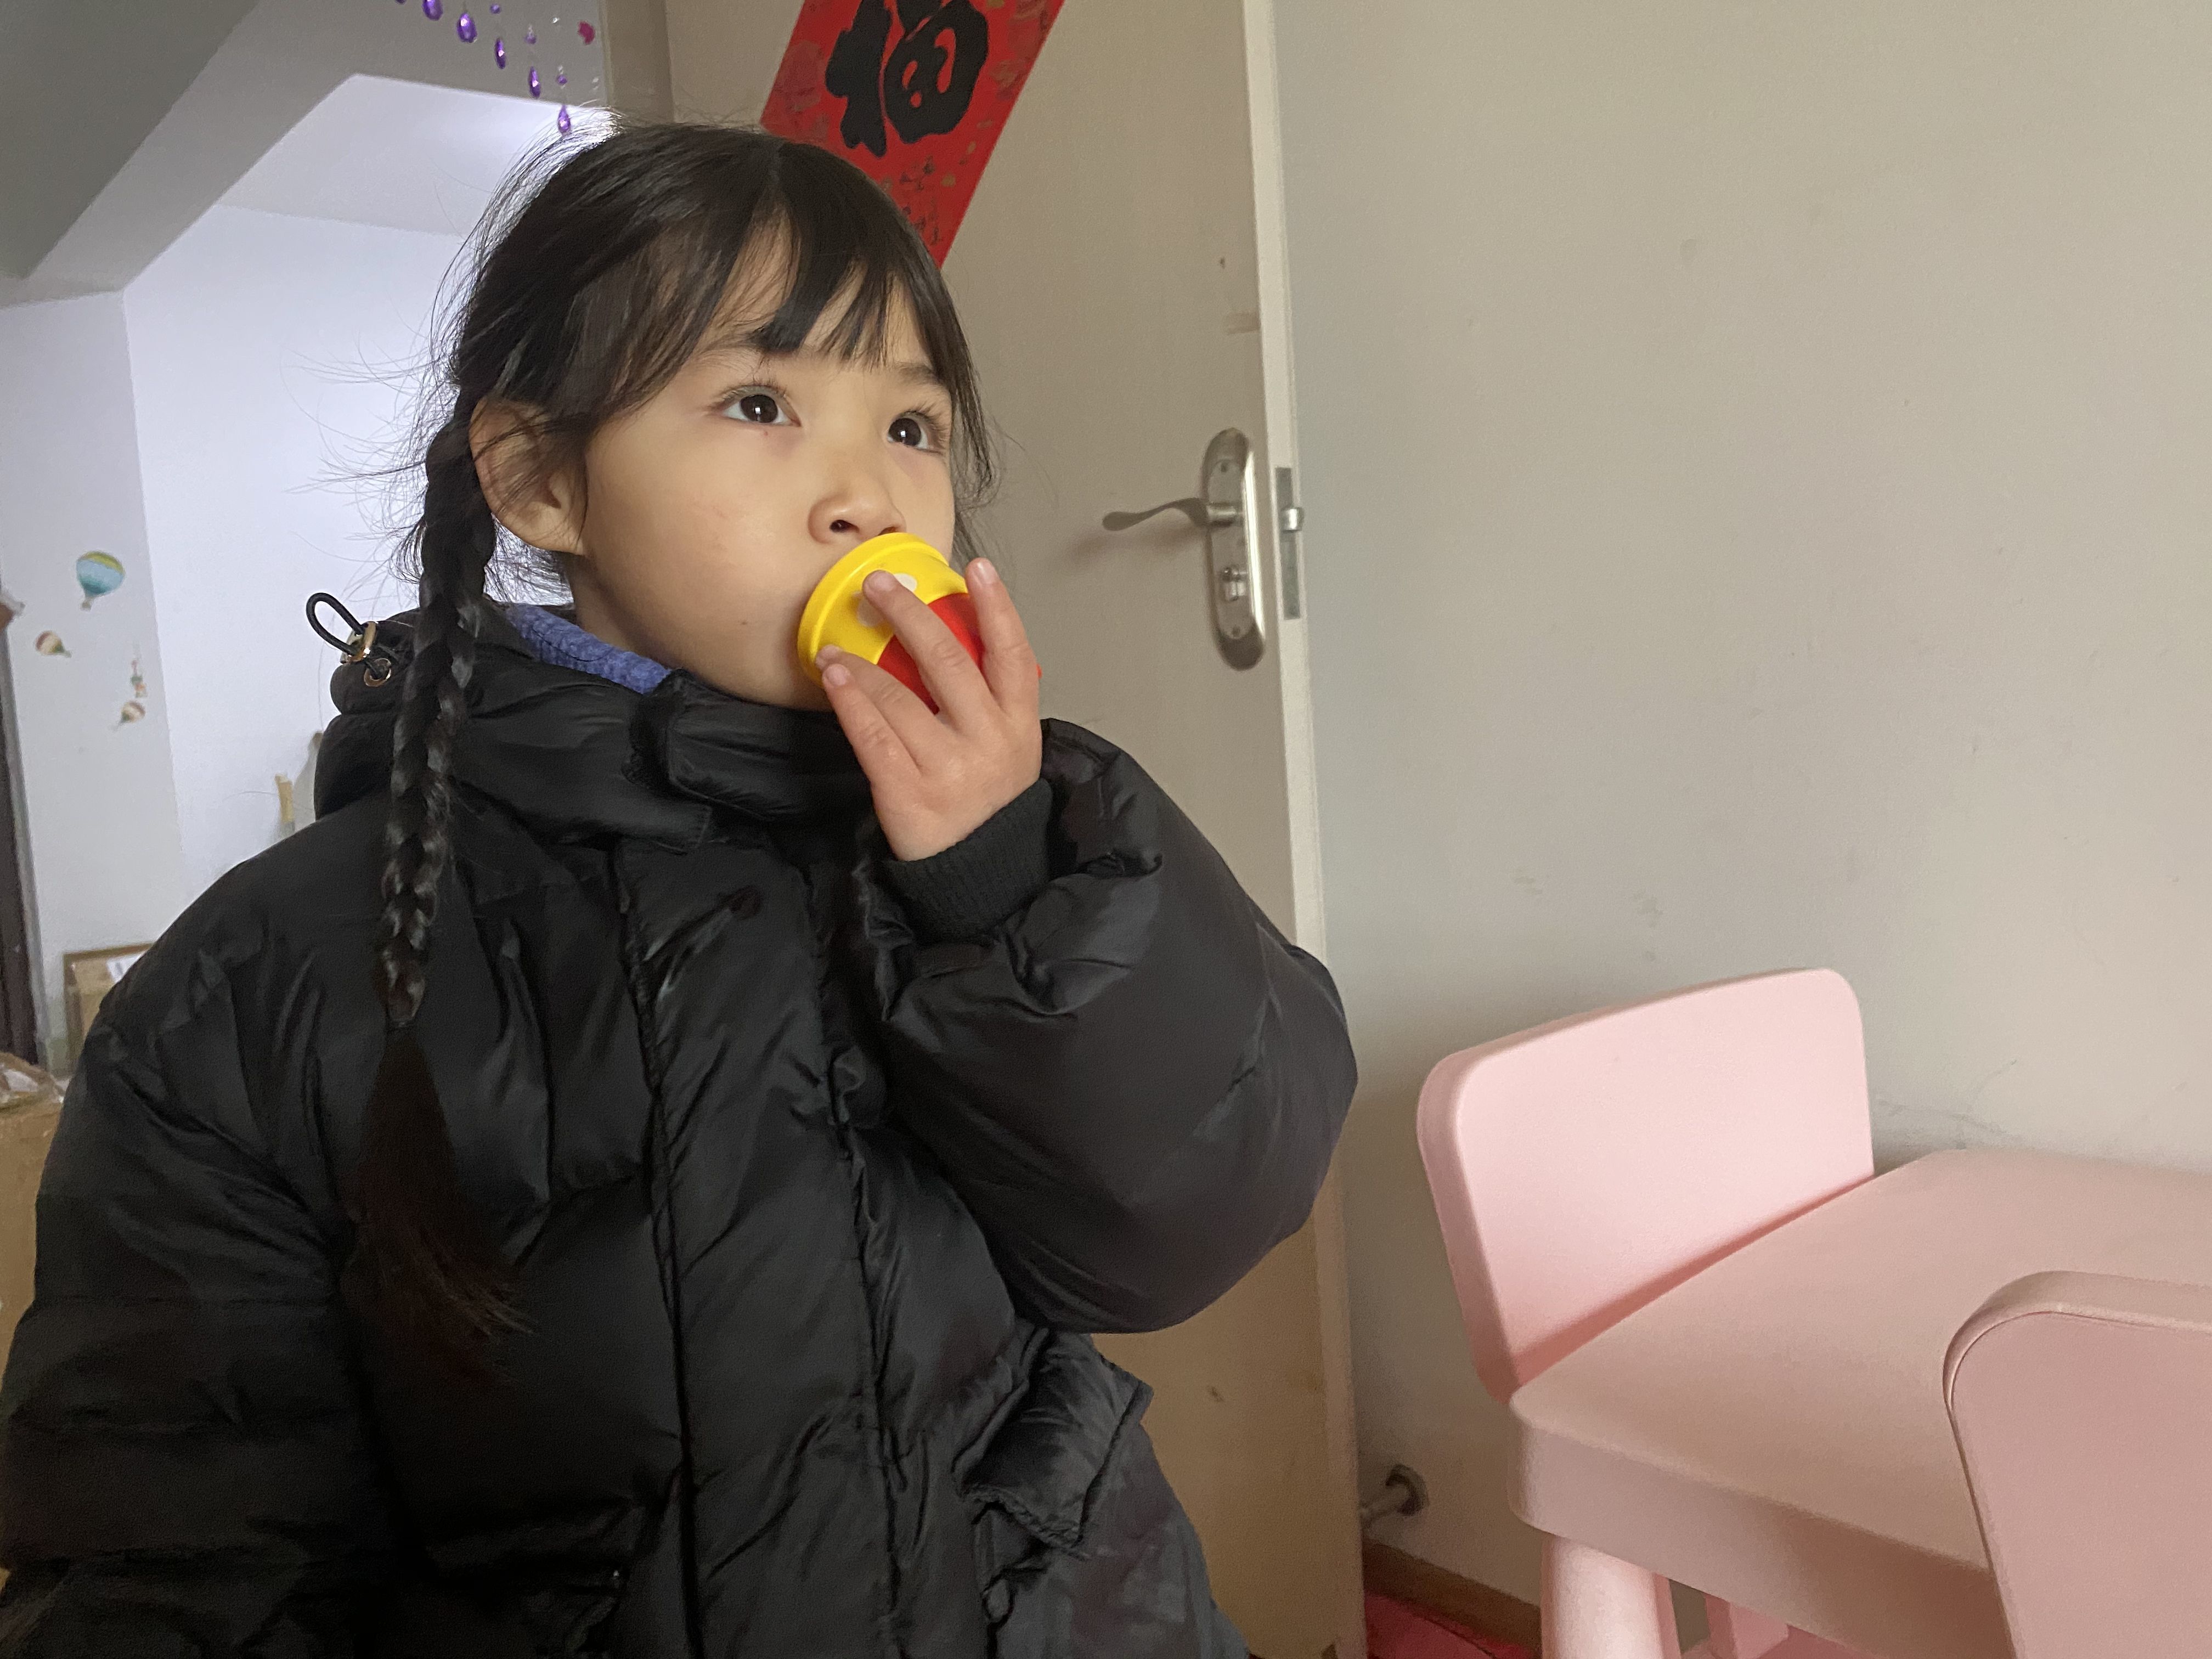 蓝妮妮在玩耍。新京报记者 王霜霜 摄